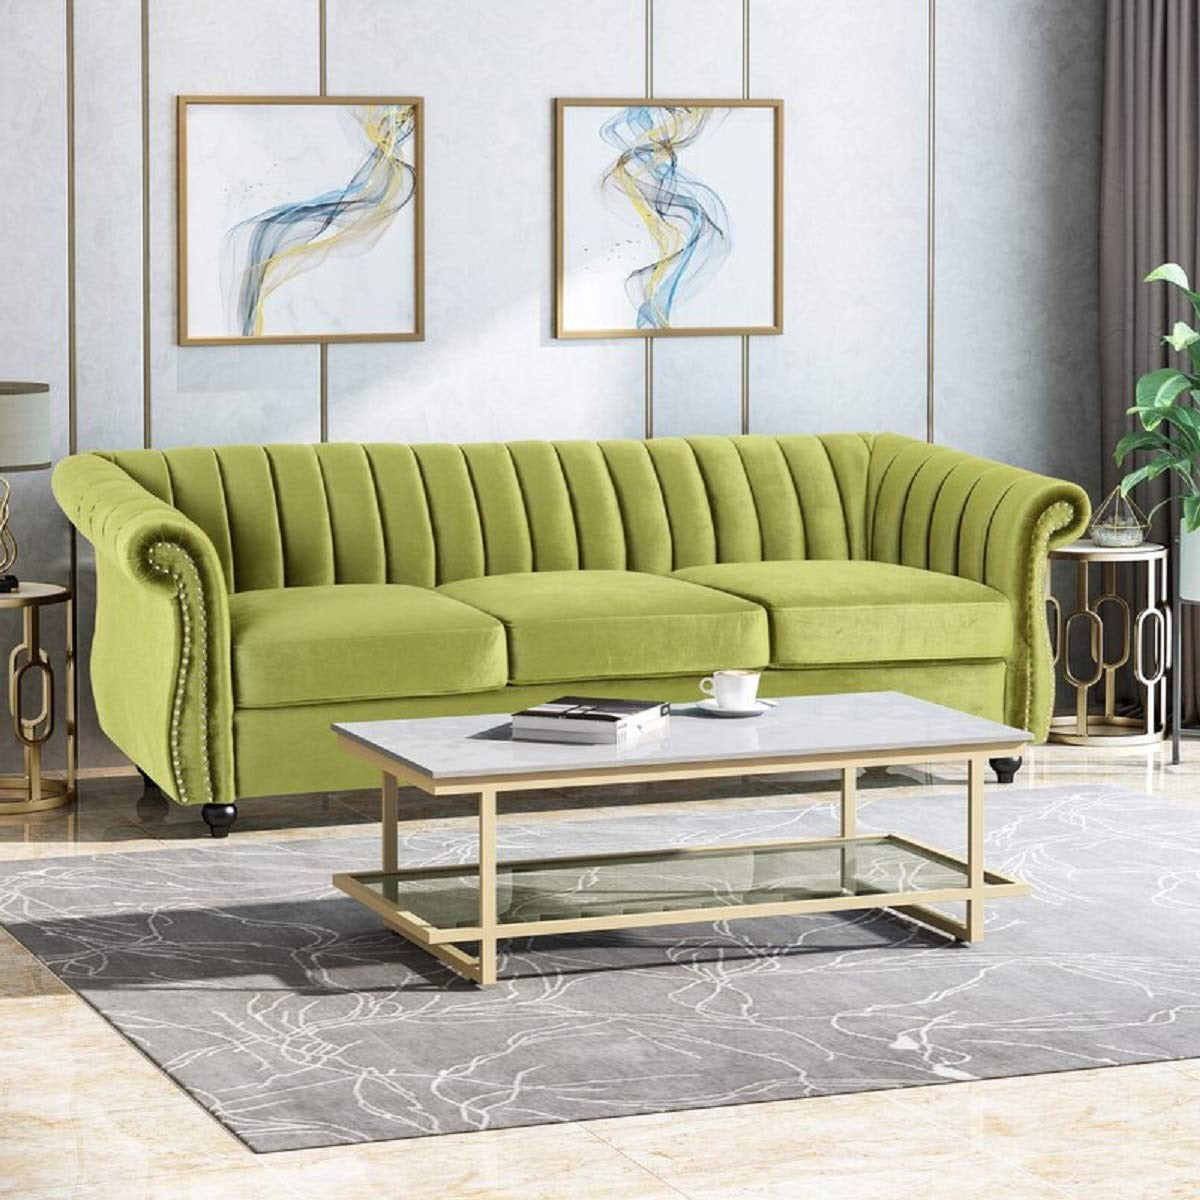 Designer Sofa Set:- 3 Seater Velvet Fabric Luxury Furniture Sofa Set 